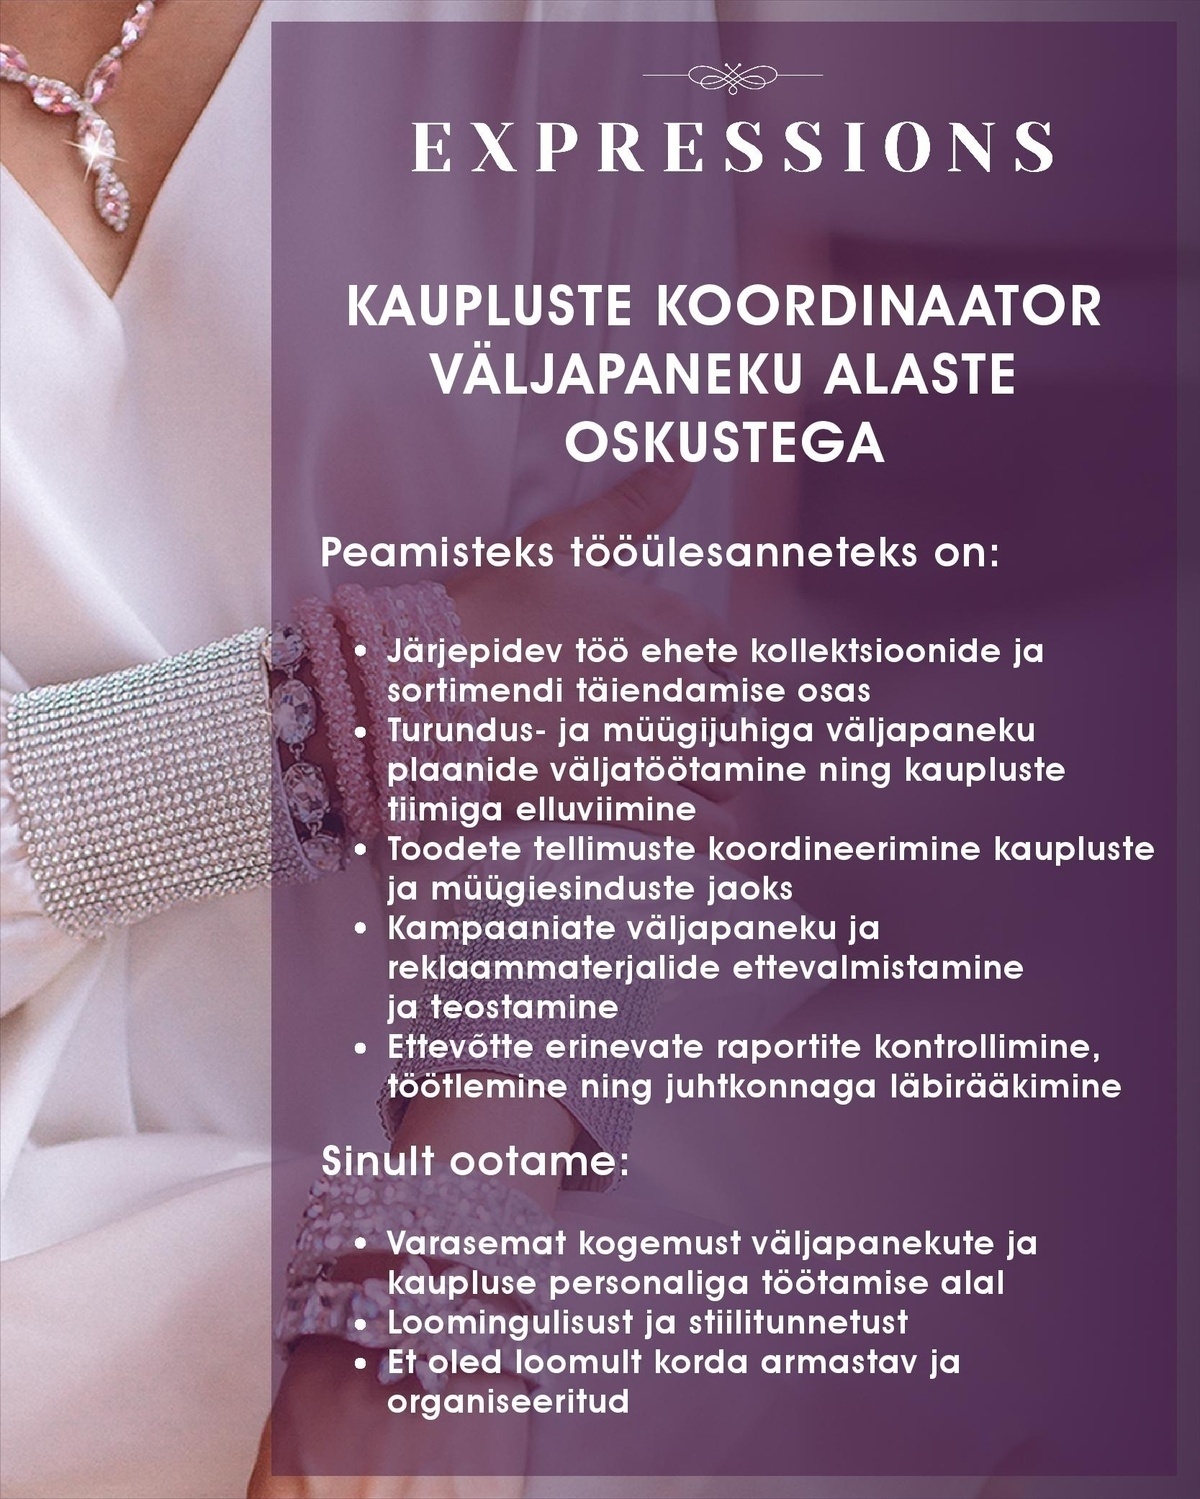 CVKeskus.ee klient KAUPLUSTE KOORDINAATOR VÄLJAPANEKUALASTE OSKUSTEGA